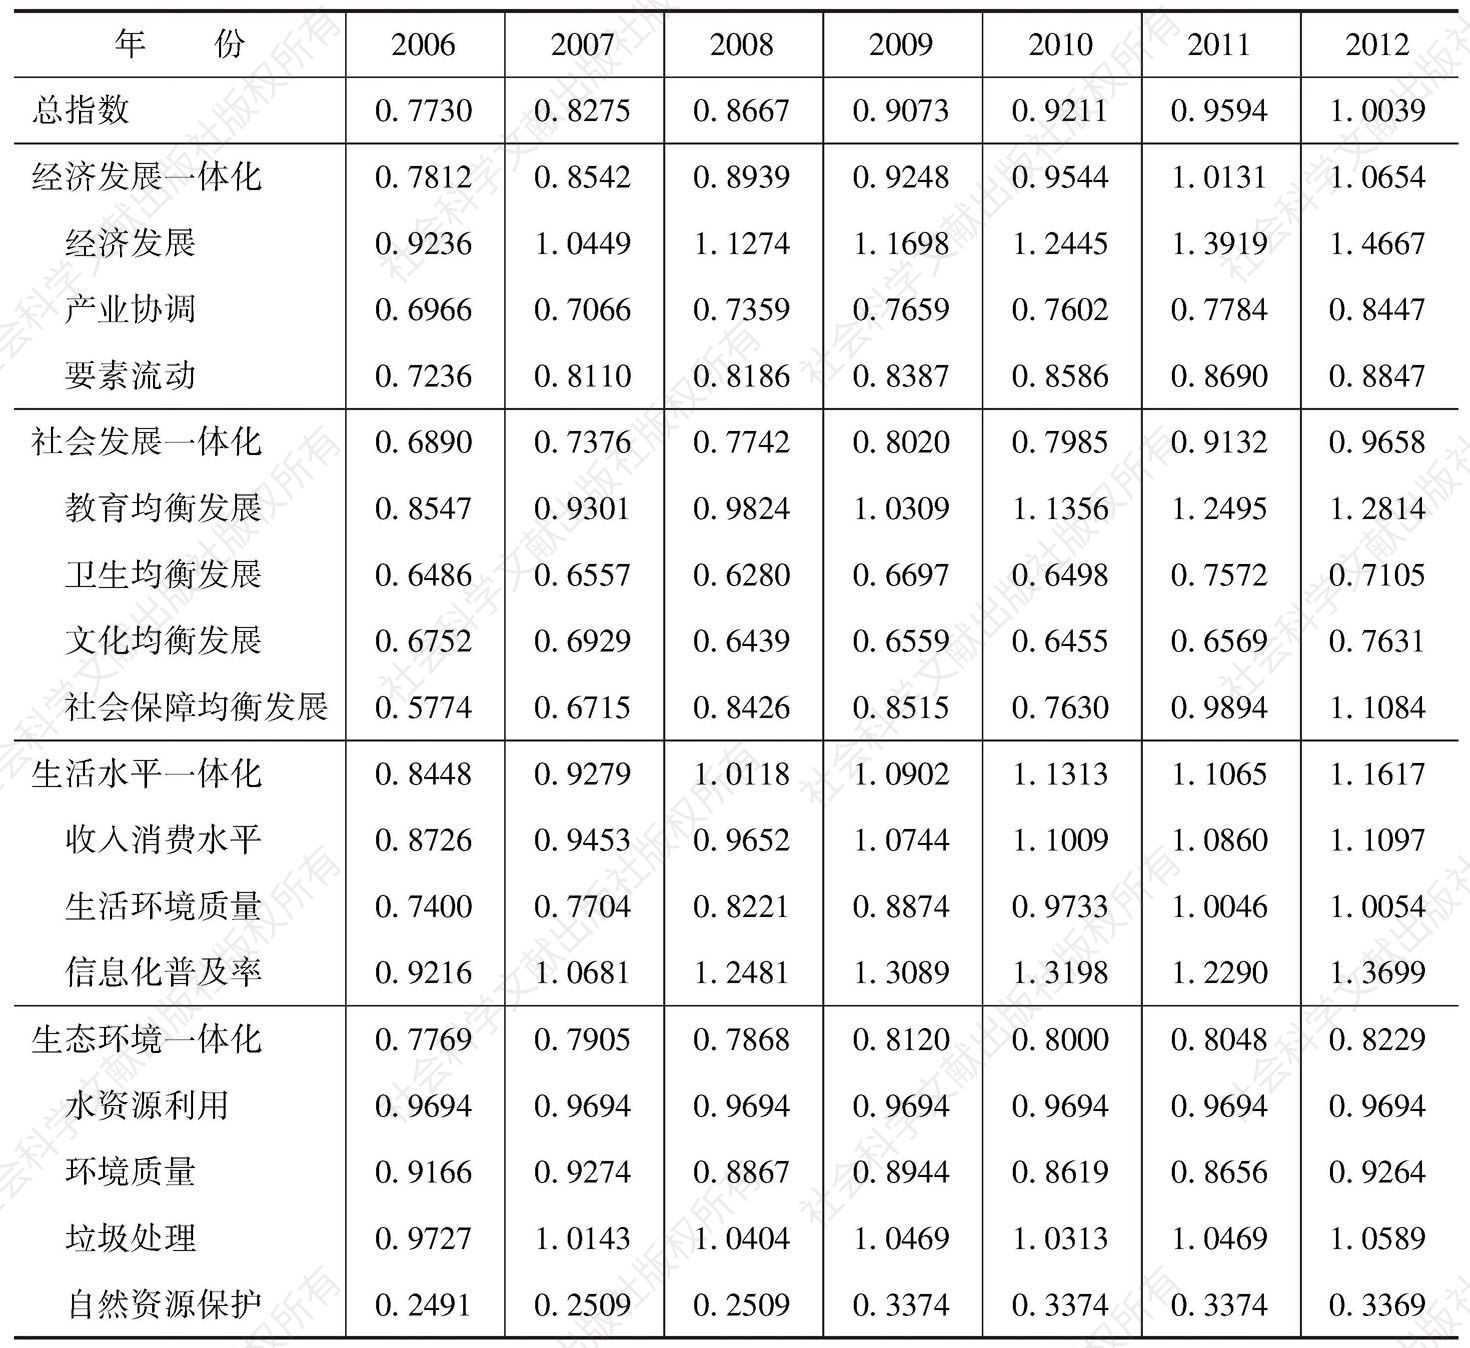 附表1-2 北京城乡发展一体化指数分值